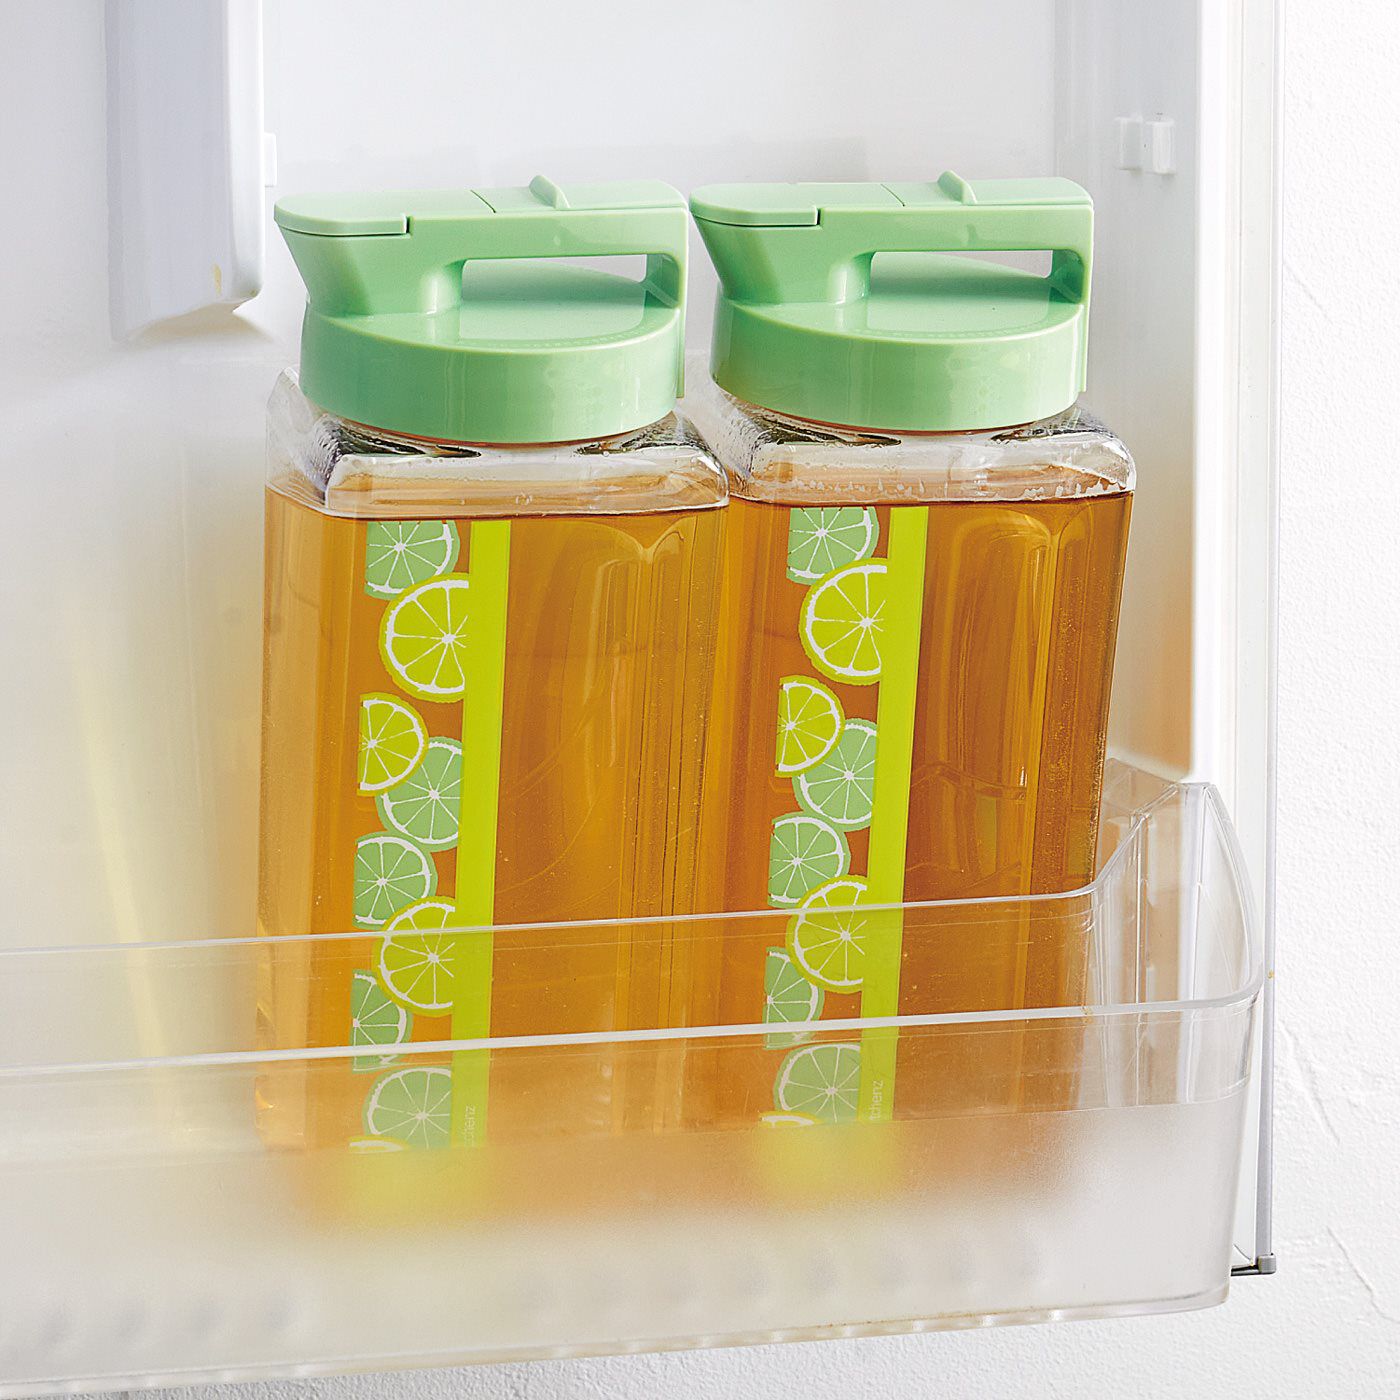 フェリシモの雑貨 Kraso|たっぷり冷やして楽しいティータイム　冷蔵庫にすっきり収まる角形ピッチャー|ハンドルがない角形フォルムは縦置き、横置きどちらもできて、複数並べても省スペース。